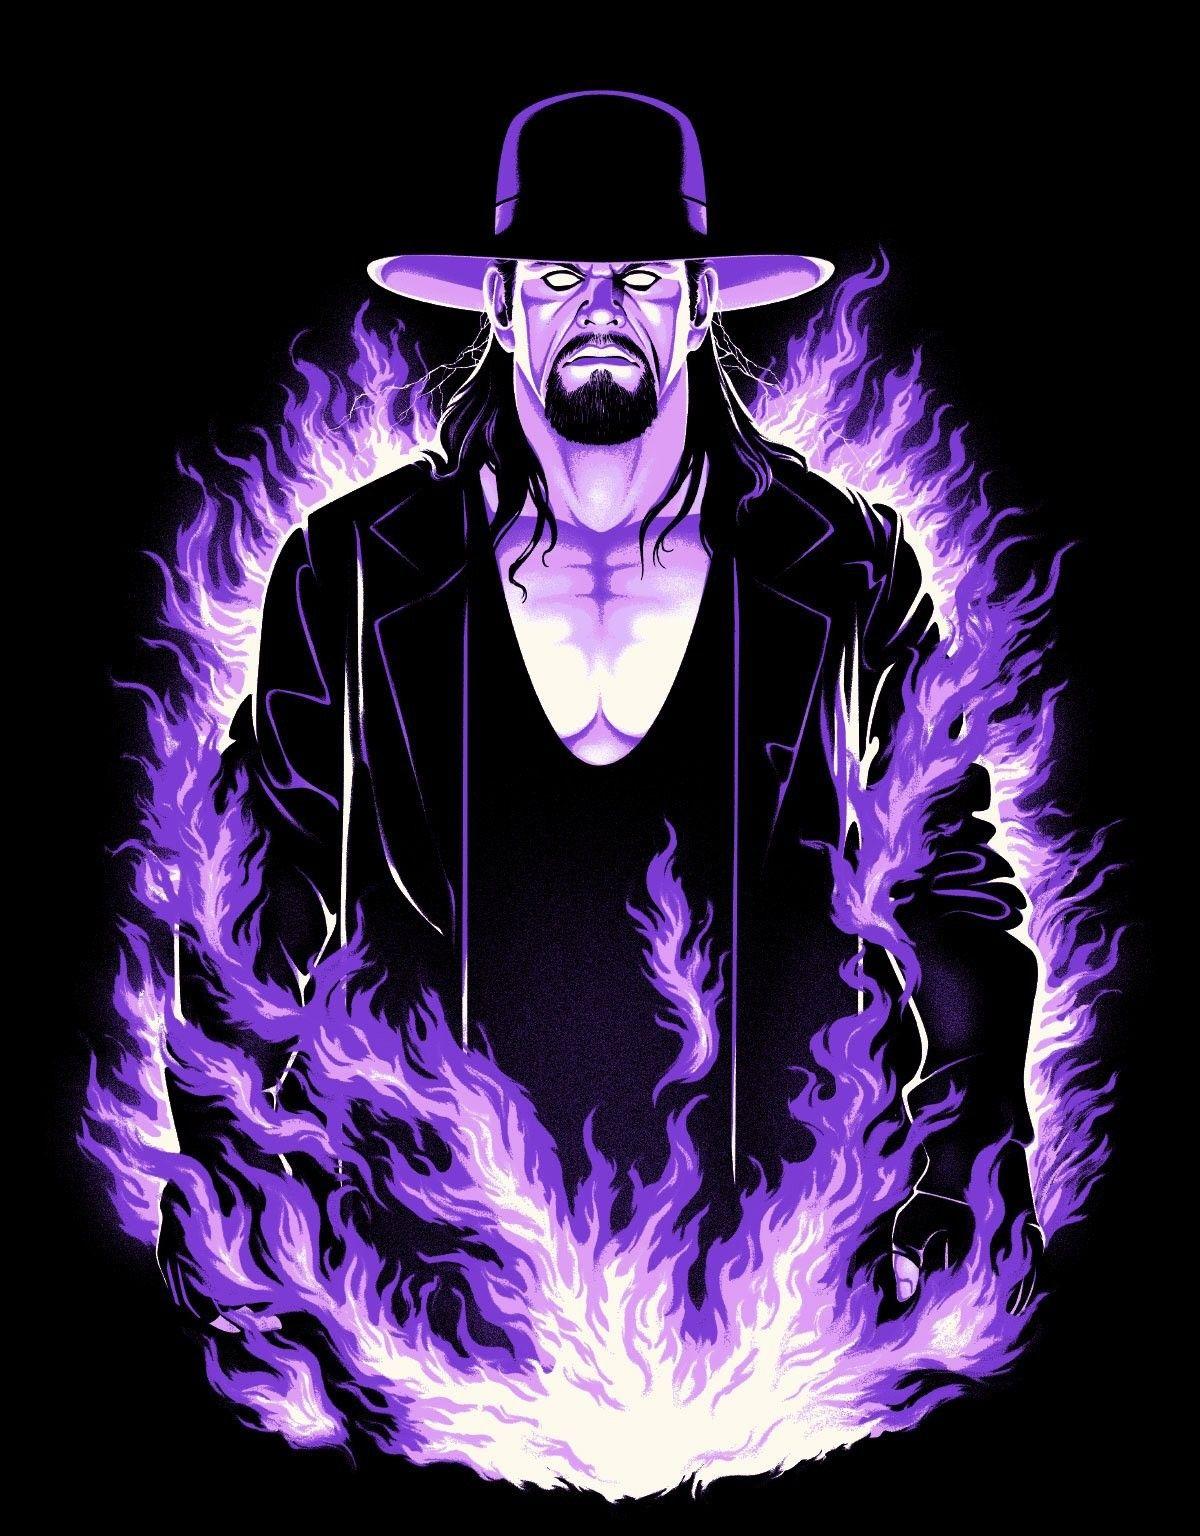 Undertaker. Undertaker wwe, Wwe logo, Wrestling wwe